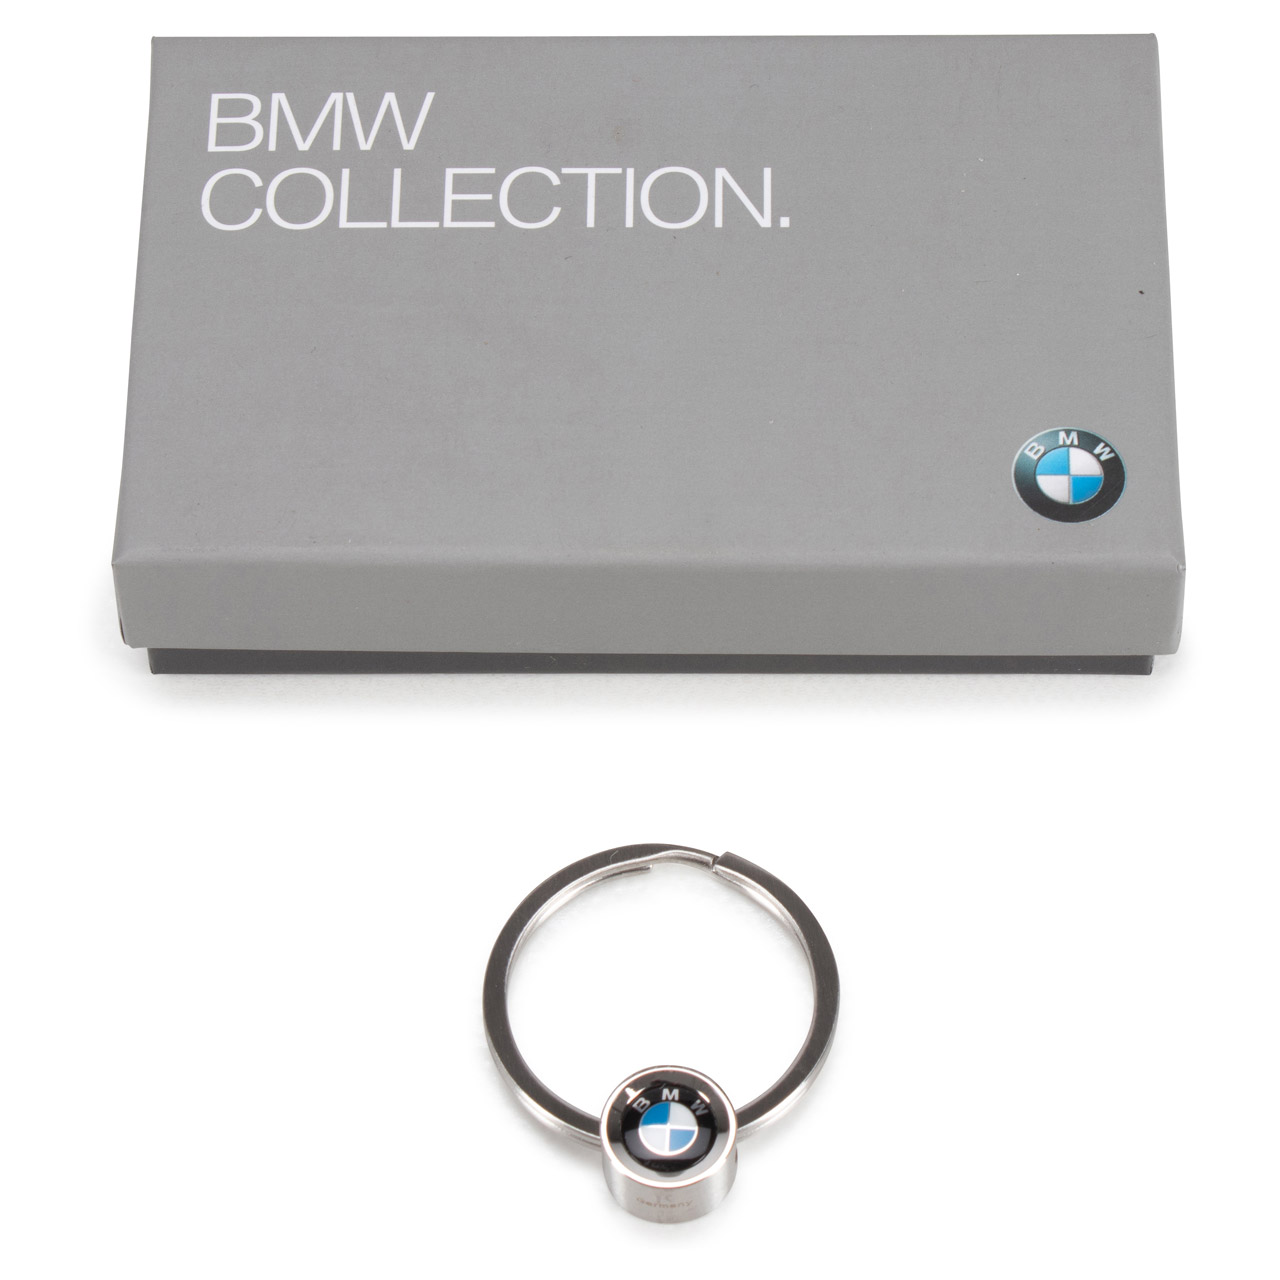 ORIGINAL BMW Edelstahl Schlüsselanhänger mit farbigem BMW Logo 80272454771